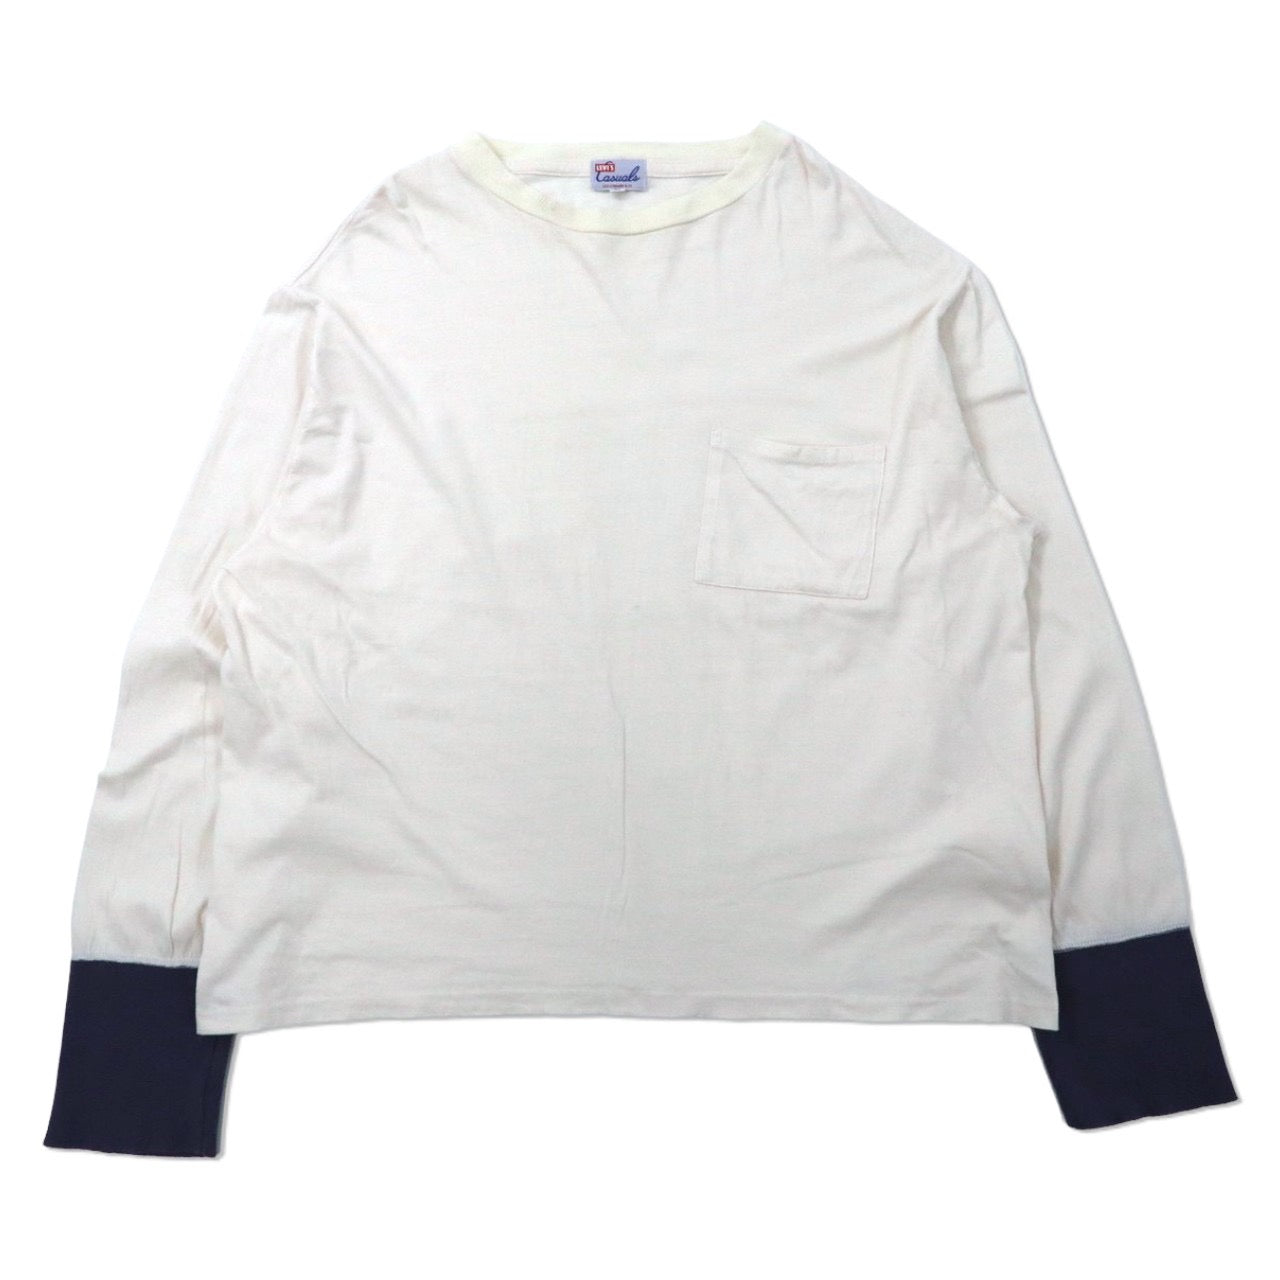 LEVI'S VINTAGE CLOTHING ( LVC ) 長袖ルーズフィットTシャツ M ホワイト コットン Casualsライン ポルトガル製